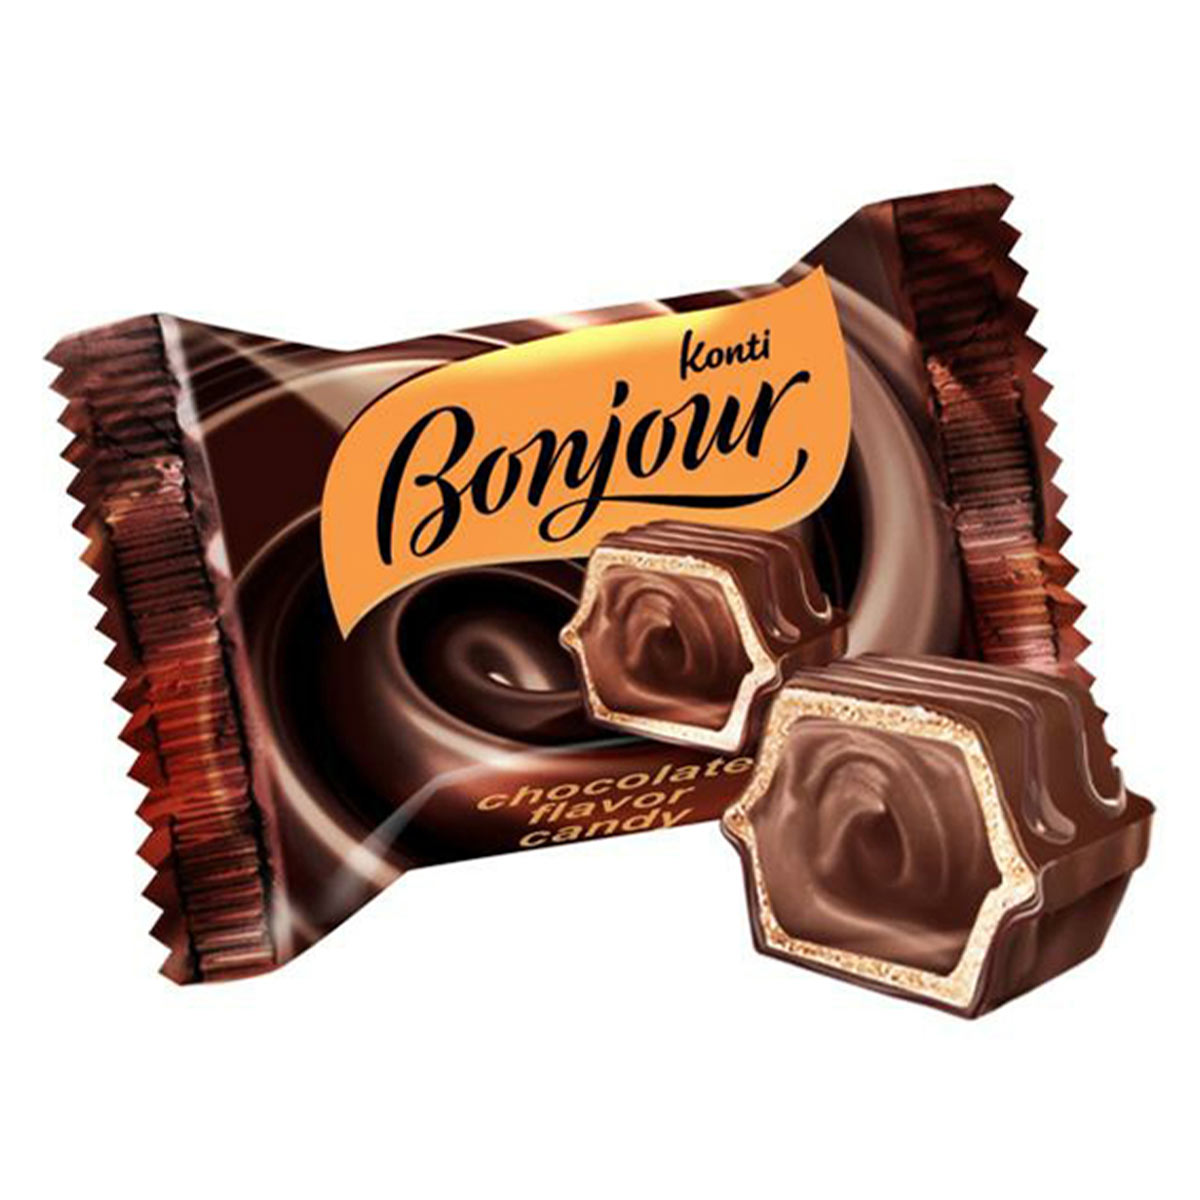 3 вкуса шоколада. Bonjour конфеты. Konti конфеты. Шоколадные конфеты Конти. Бонжур Конти шоколад.